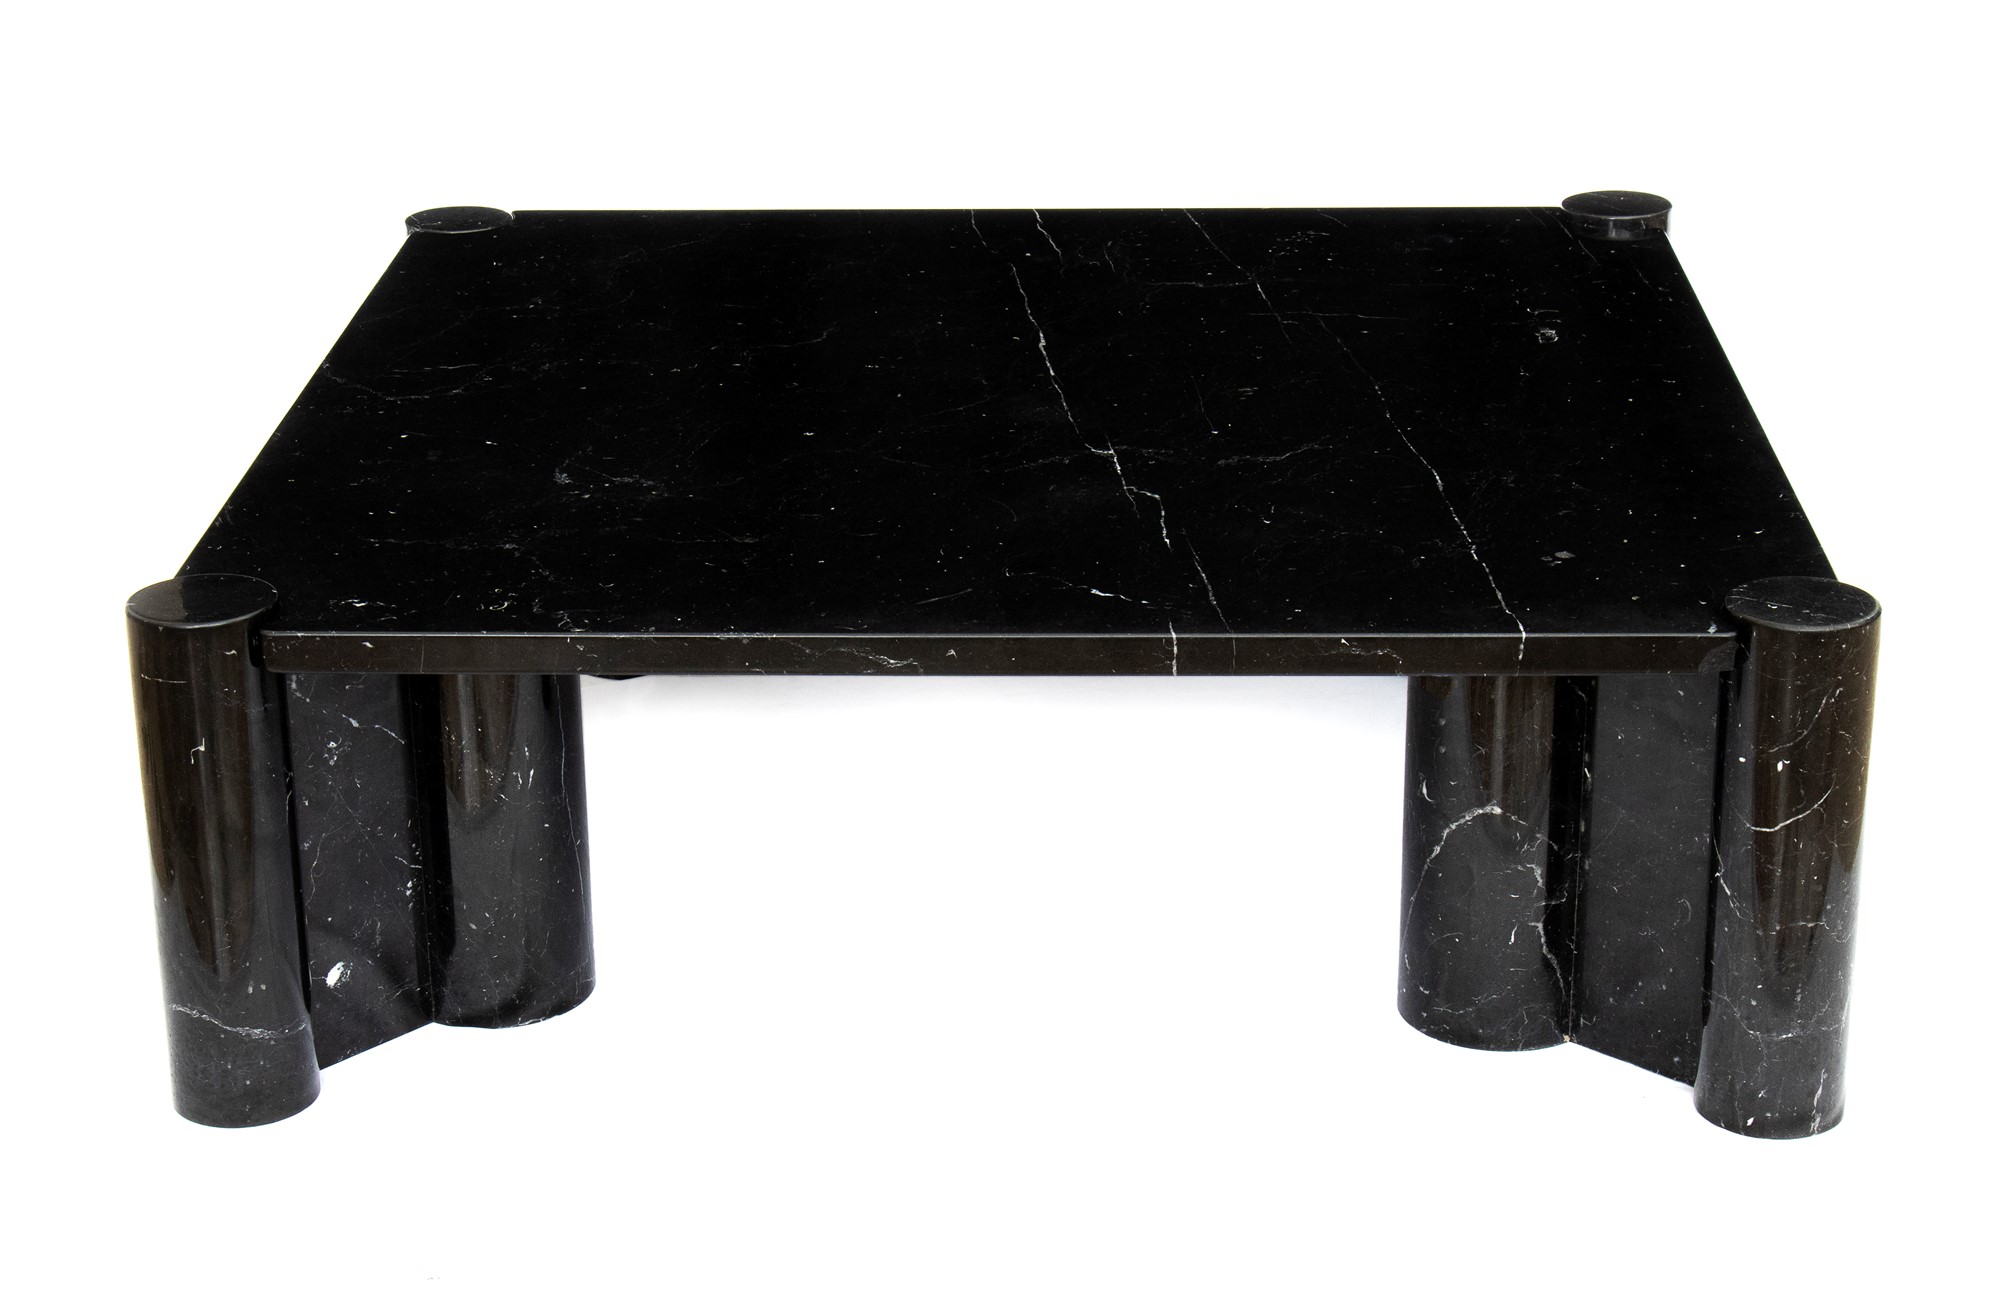 Gae Aulenti Palazzolo dello Stella 1927-Milano 2012 Living room table in black marble marquinia mod - Image 2 of 23